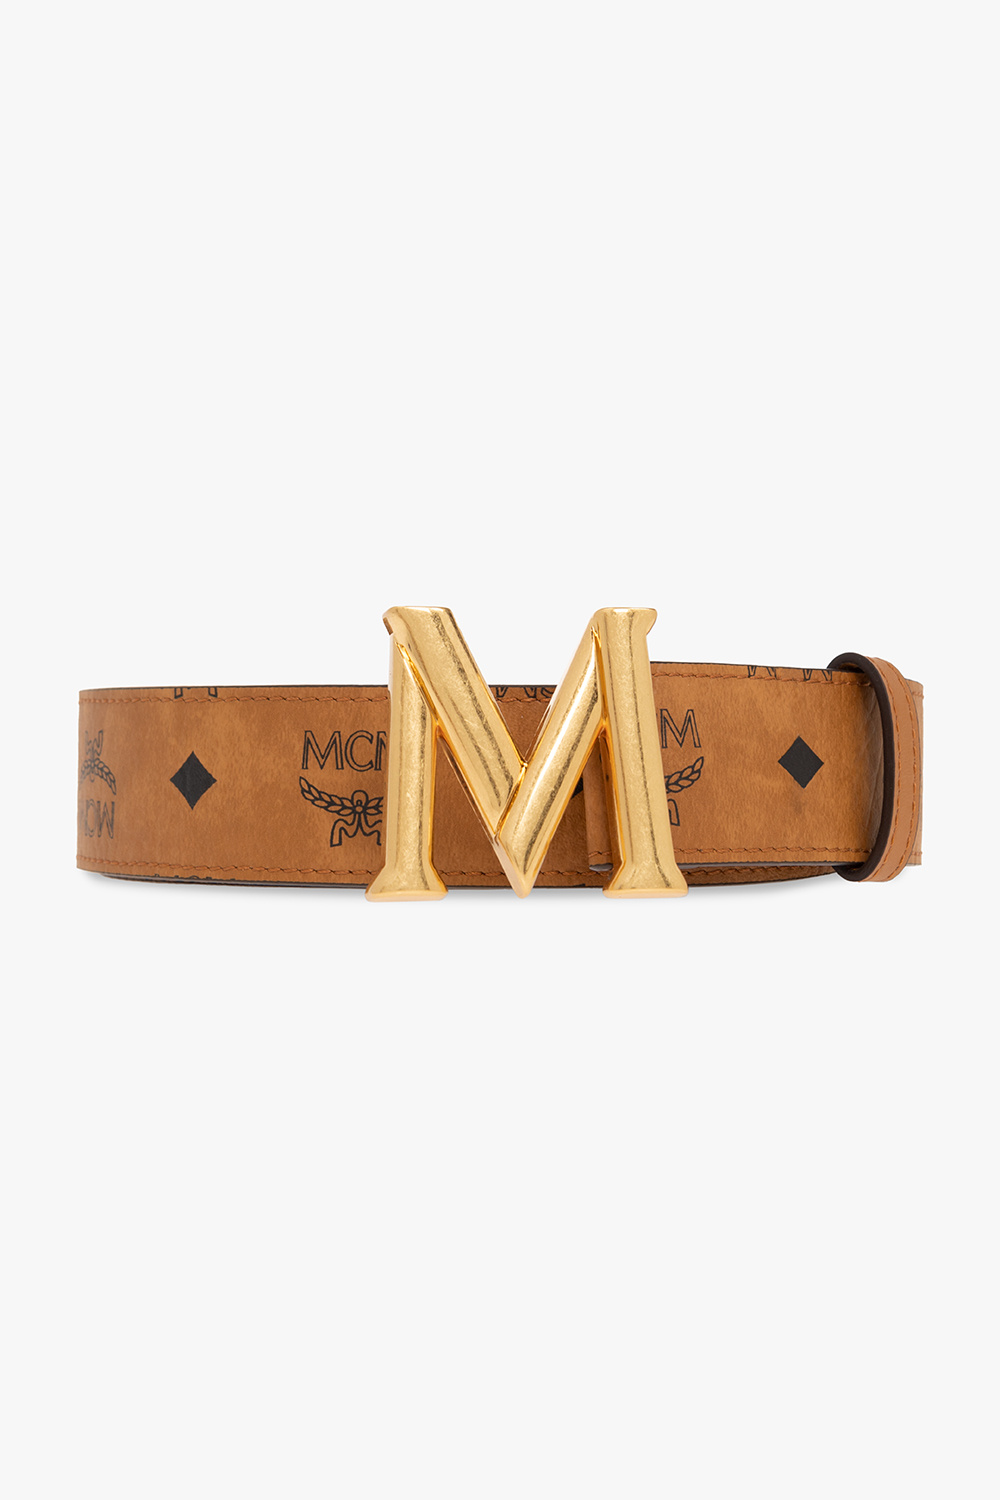 Mcm Letter Coated Canvas Belt